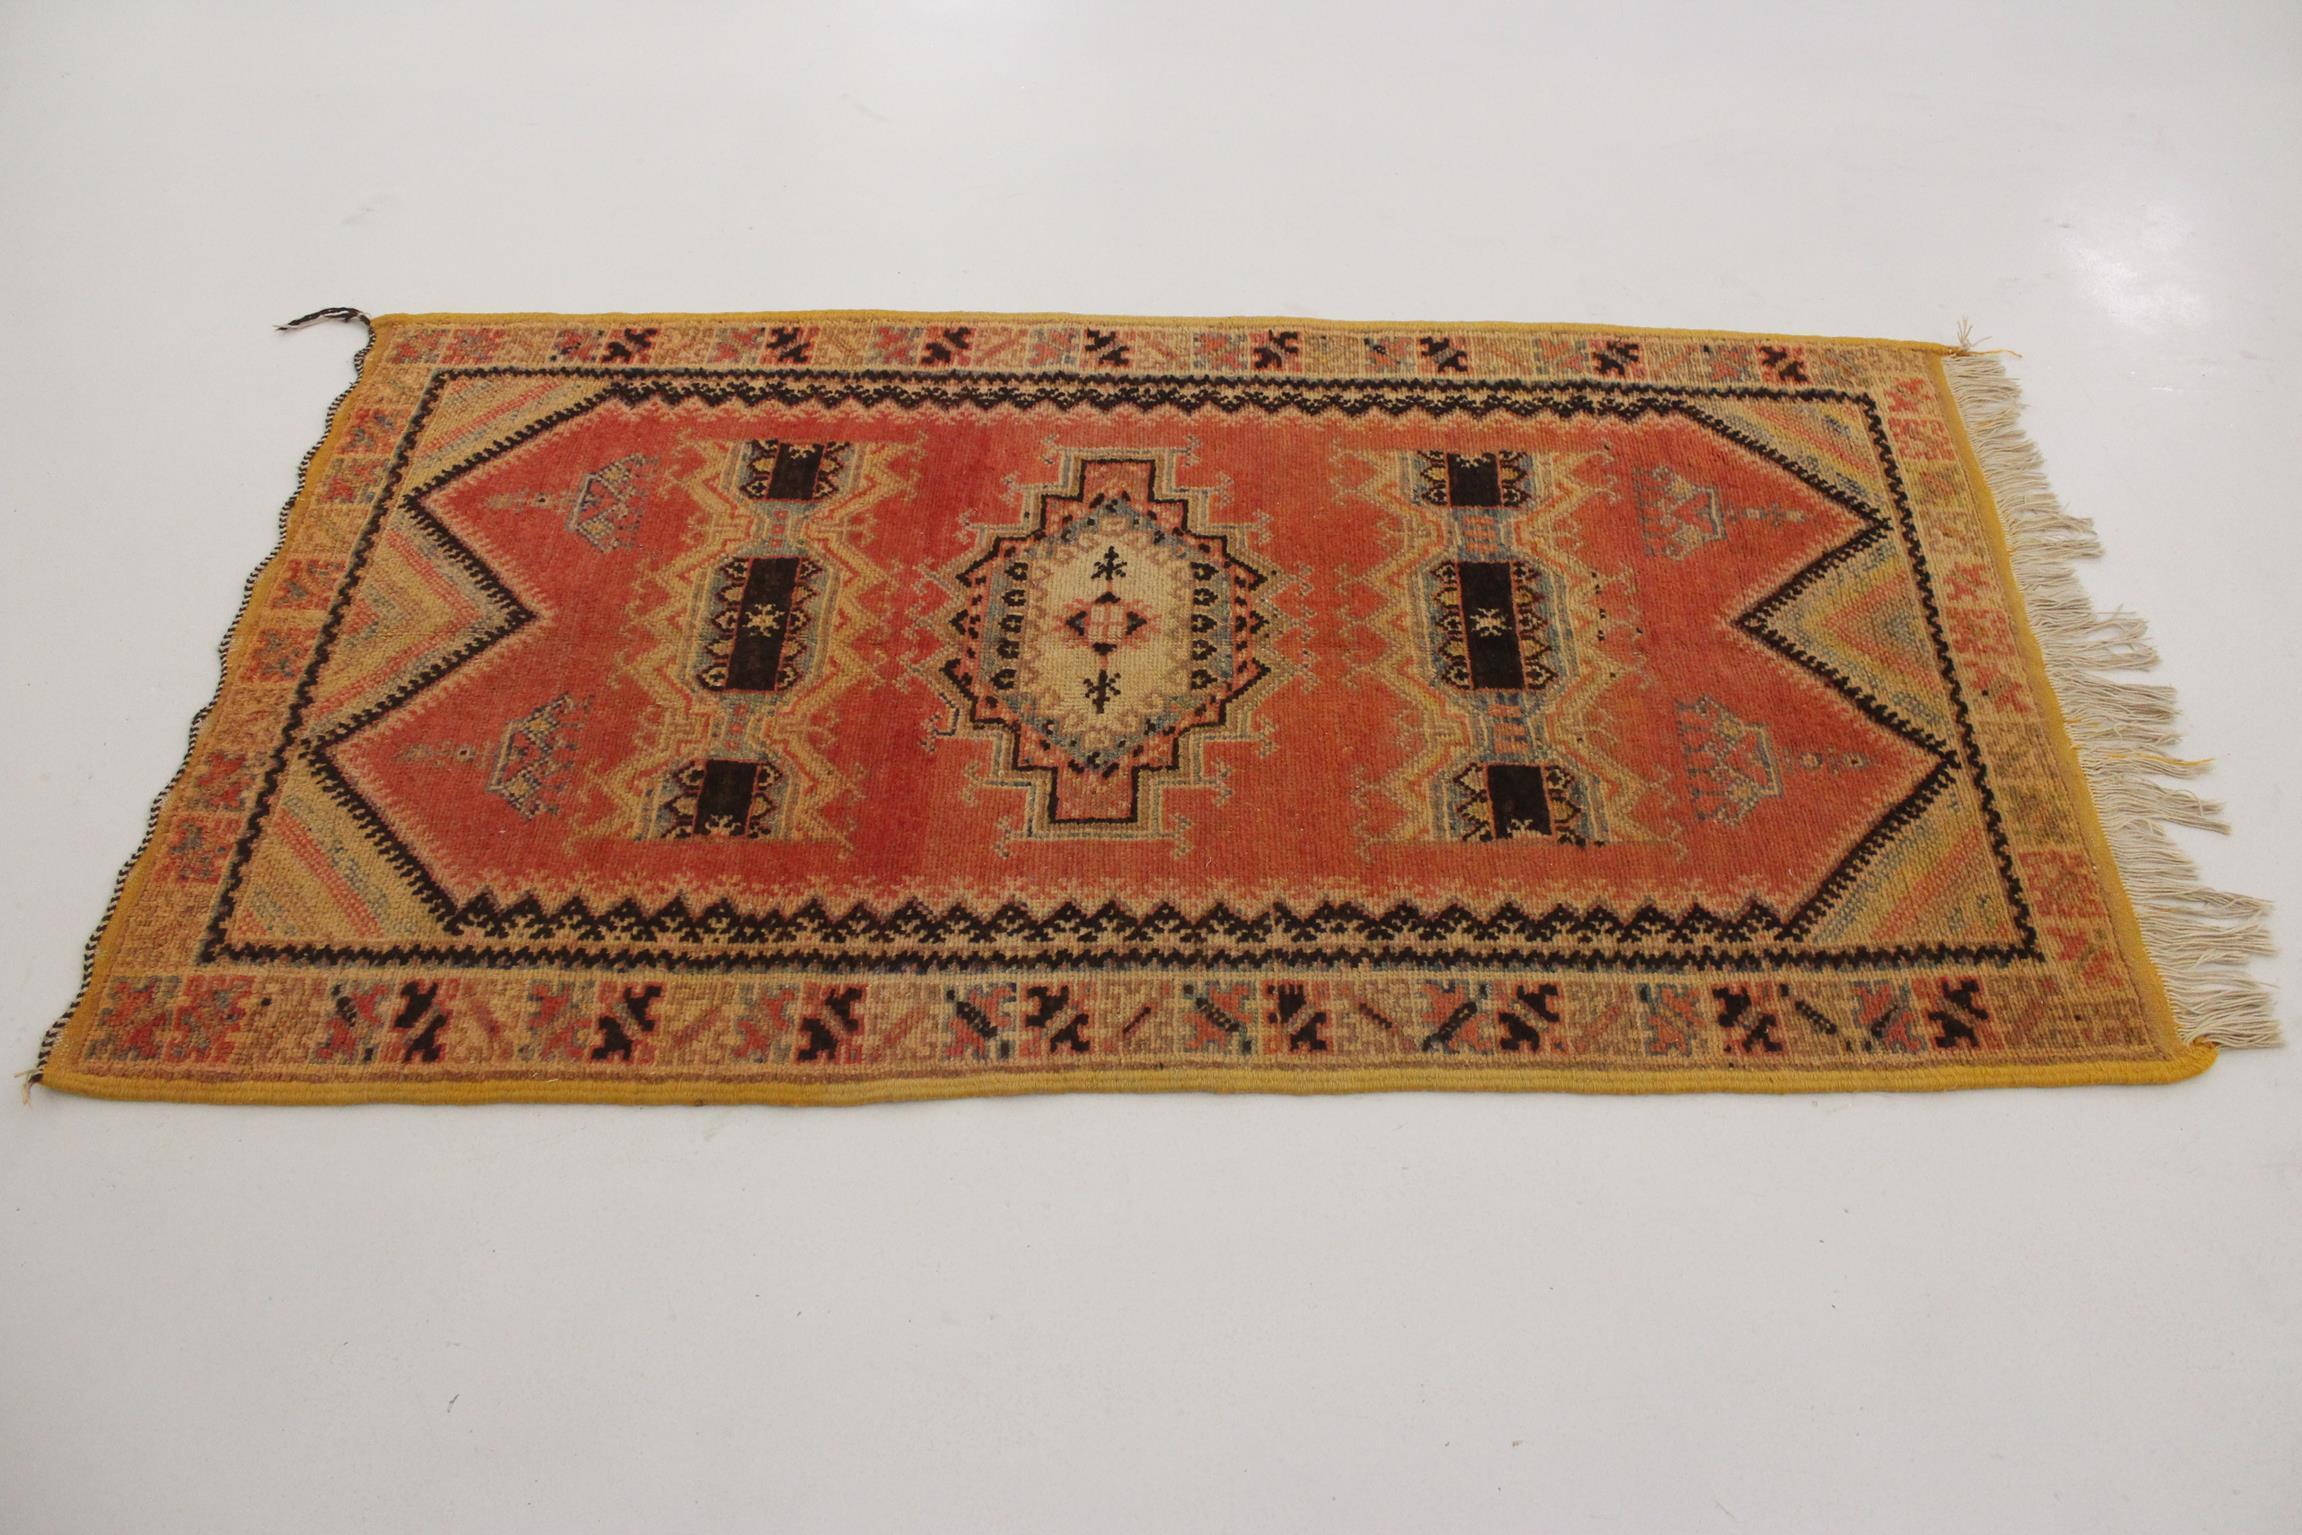 Hand-Knotted Vintage Moroccan Taznakht rug - Blood orange/black - 3.2x5.8feet / 100x178cm For Sale